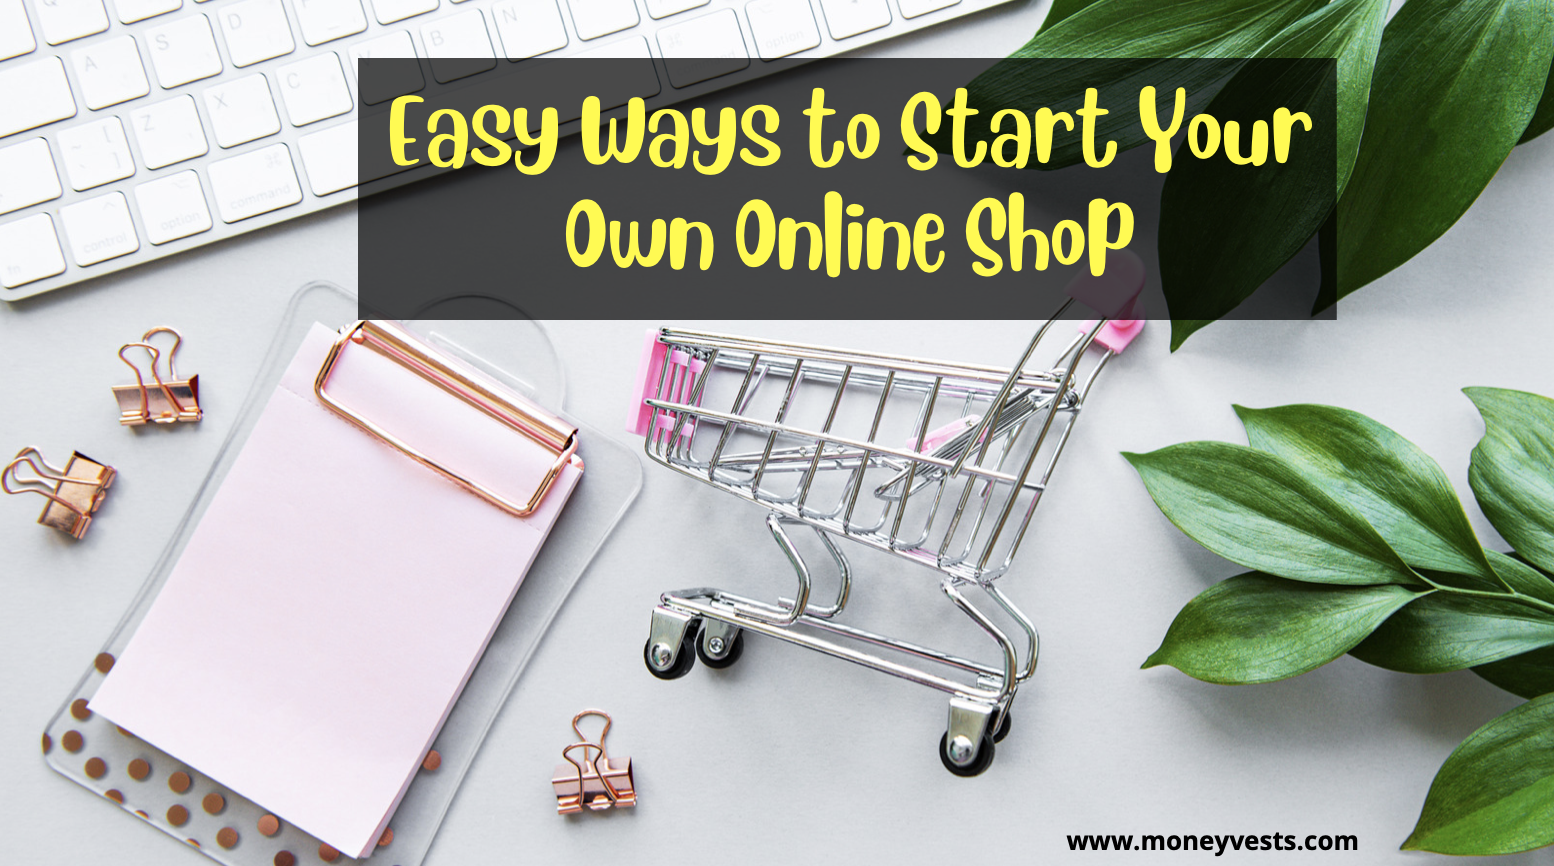 သင့်ကိုယ်ပိုင် Online Shop စတင်ရန် လွယ်ကူသောနည်းလမ်းများ